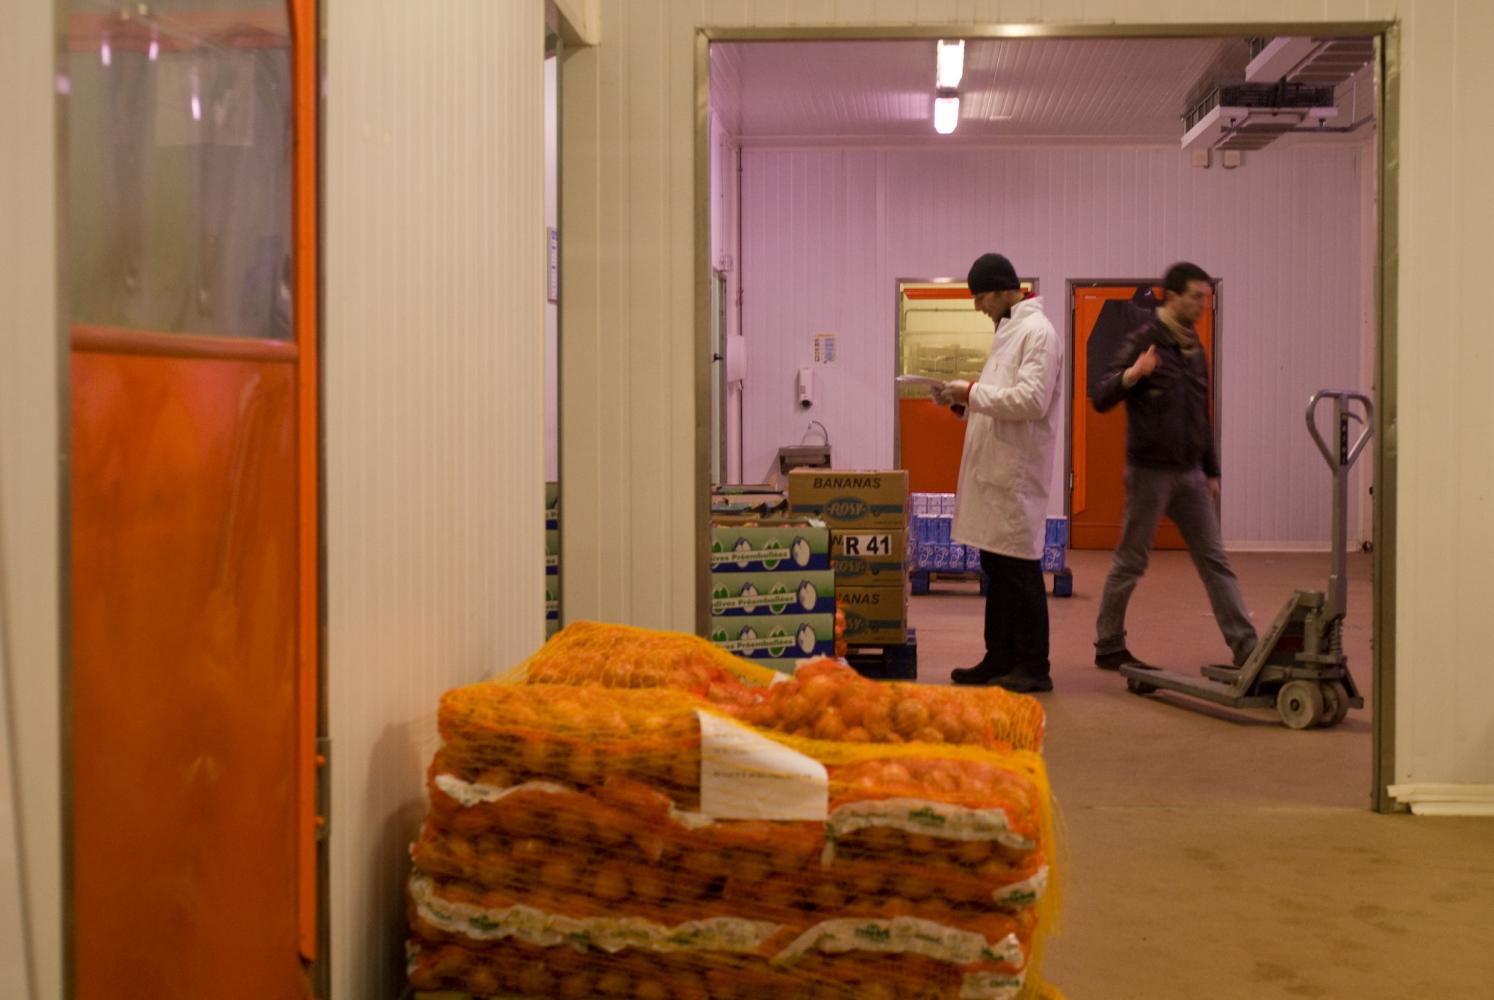 Deux hommes dans un entrepôt, parmi des sacs d'oignons, des cartons d'endives ou de bananes et un transpalette. Rungis, mars 2009.